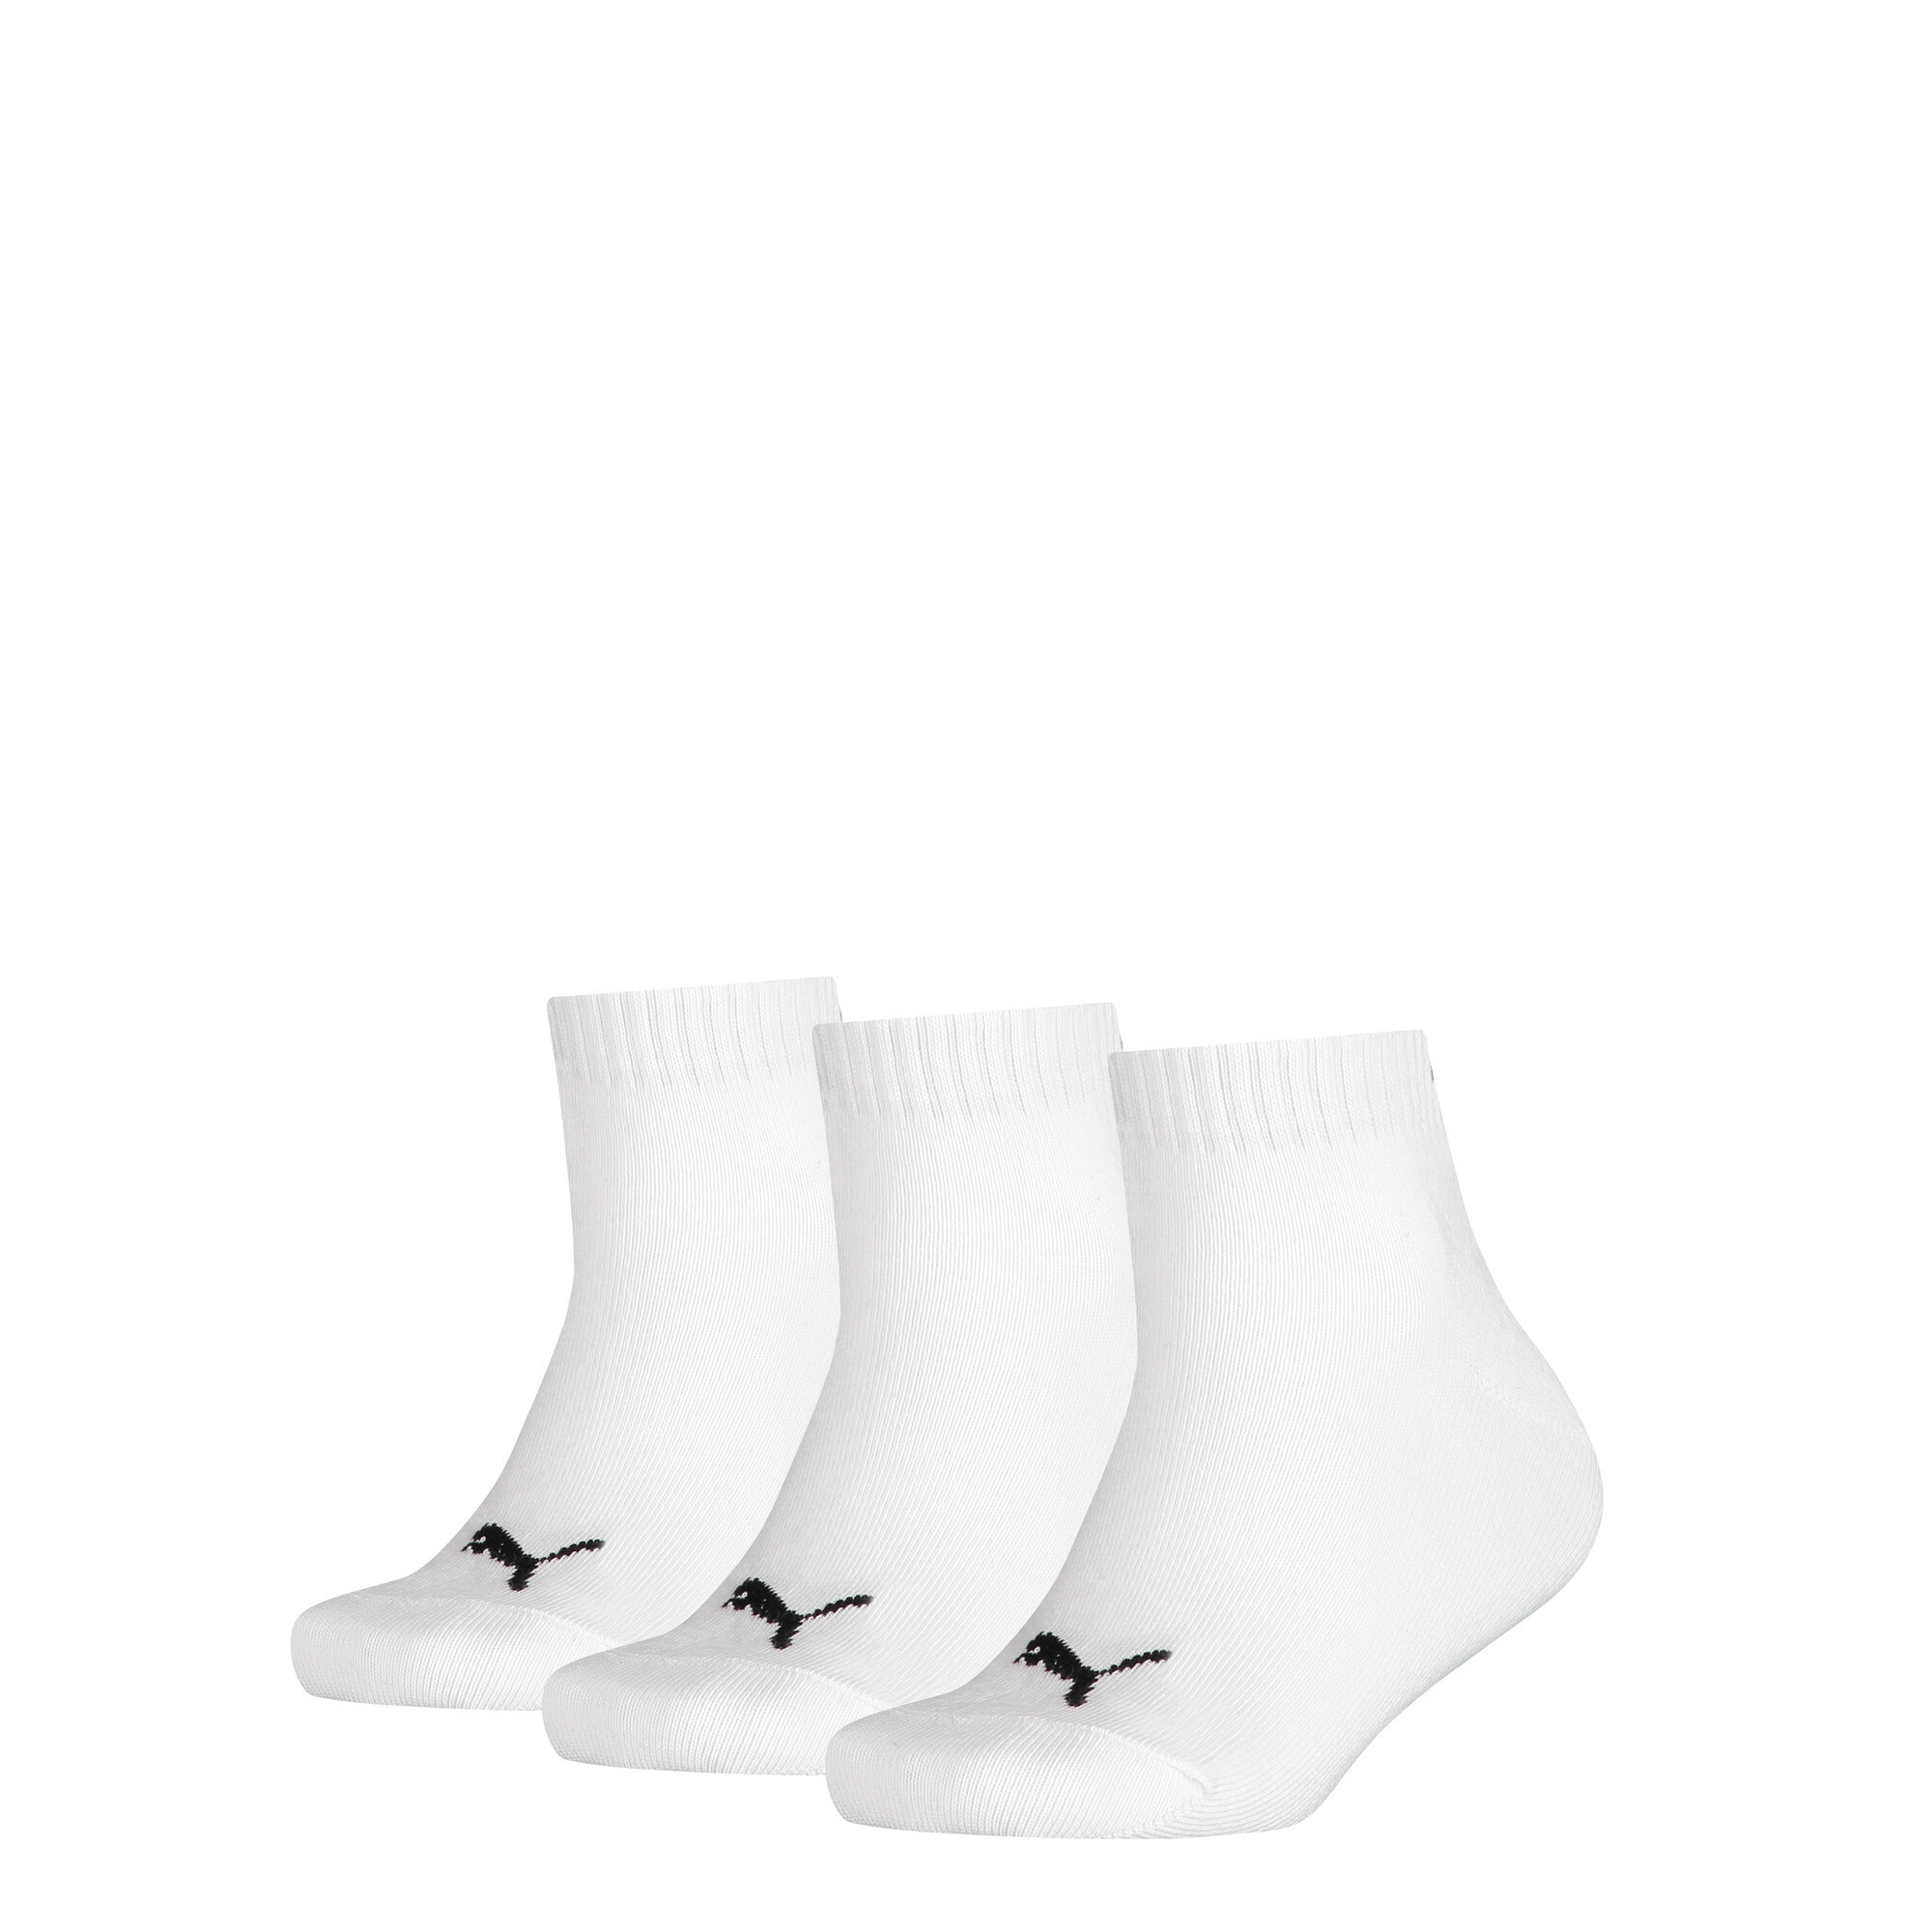 Puma Kids' Quarter Socks 3 Pack, White, Size 31-34, Kids